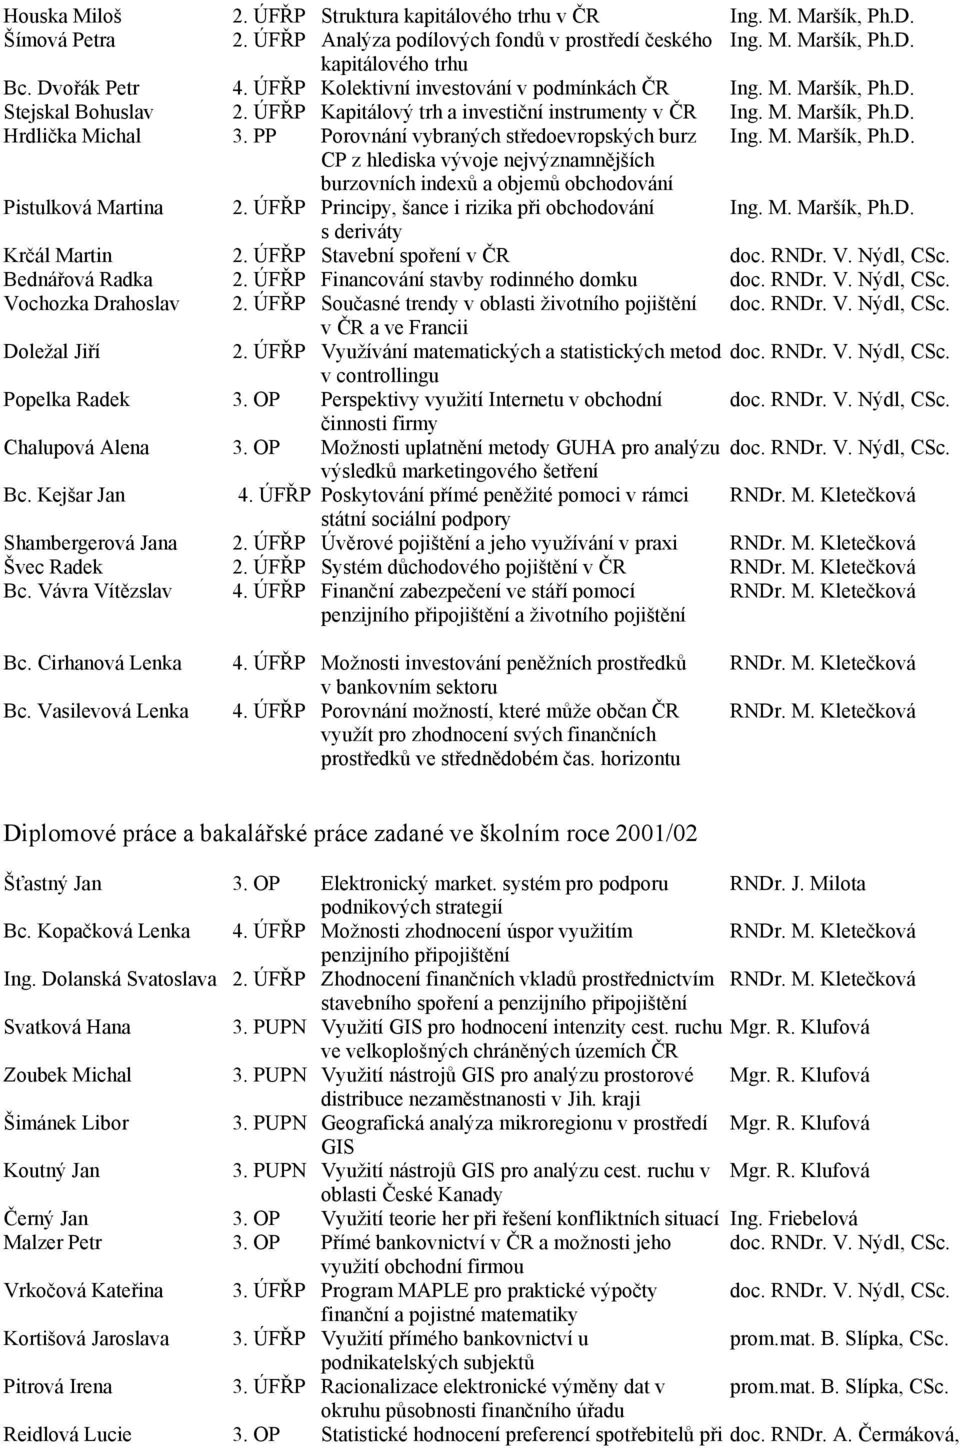 PP Porovnání vybraných středoevropských burz Ing. M. Maršík, Ph.D. CP z hlediska vývoje nejvýznamnějších burzovních indexů a objemů obchodování Pistulková Martina 2.